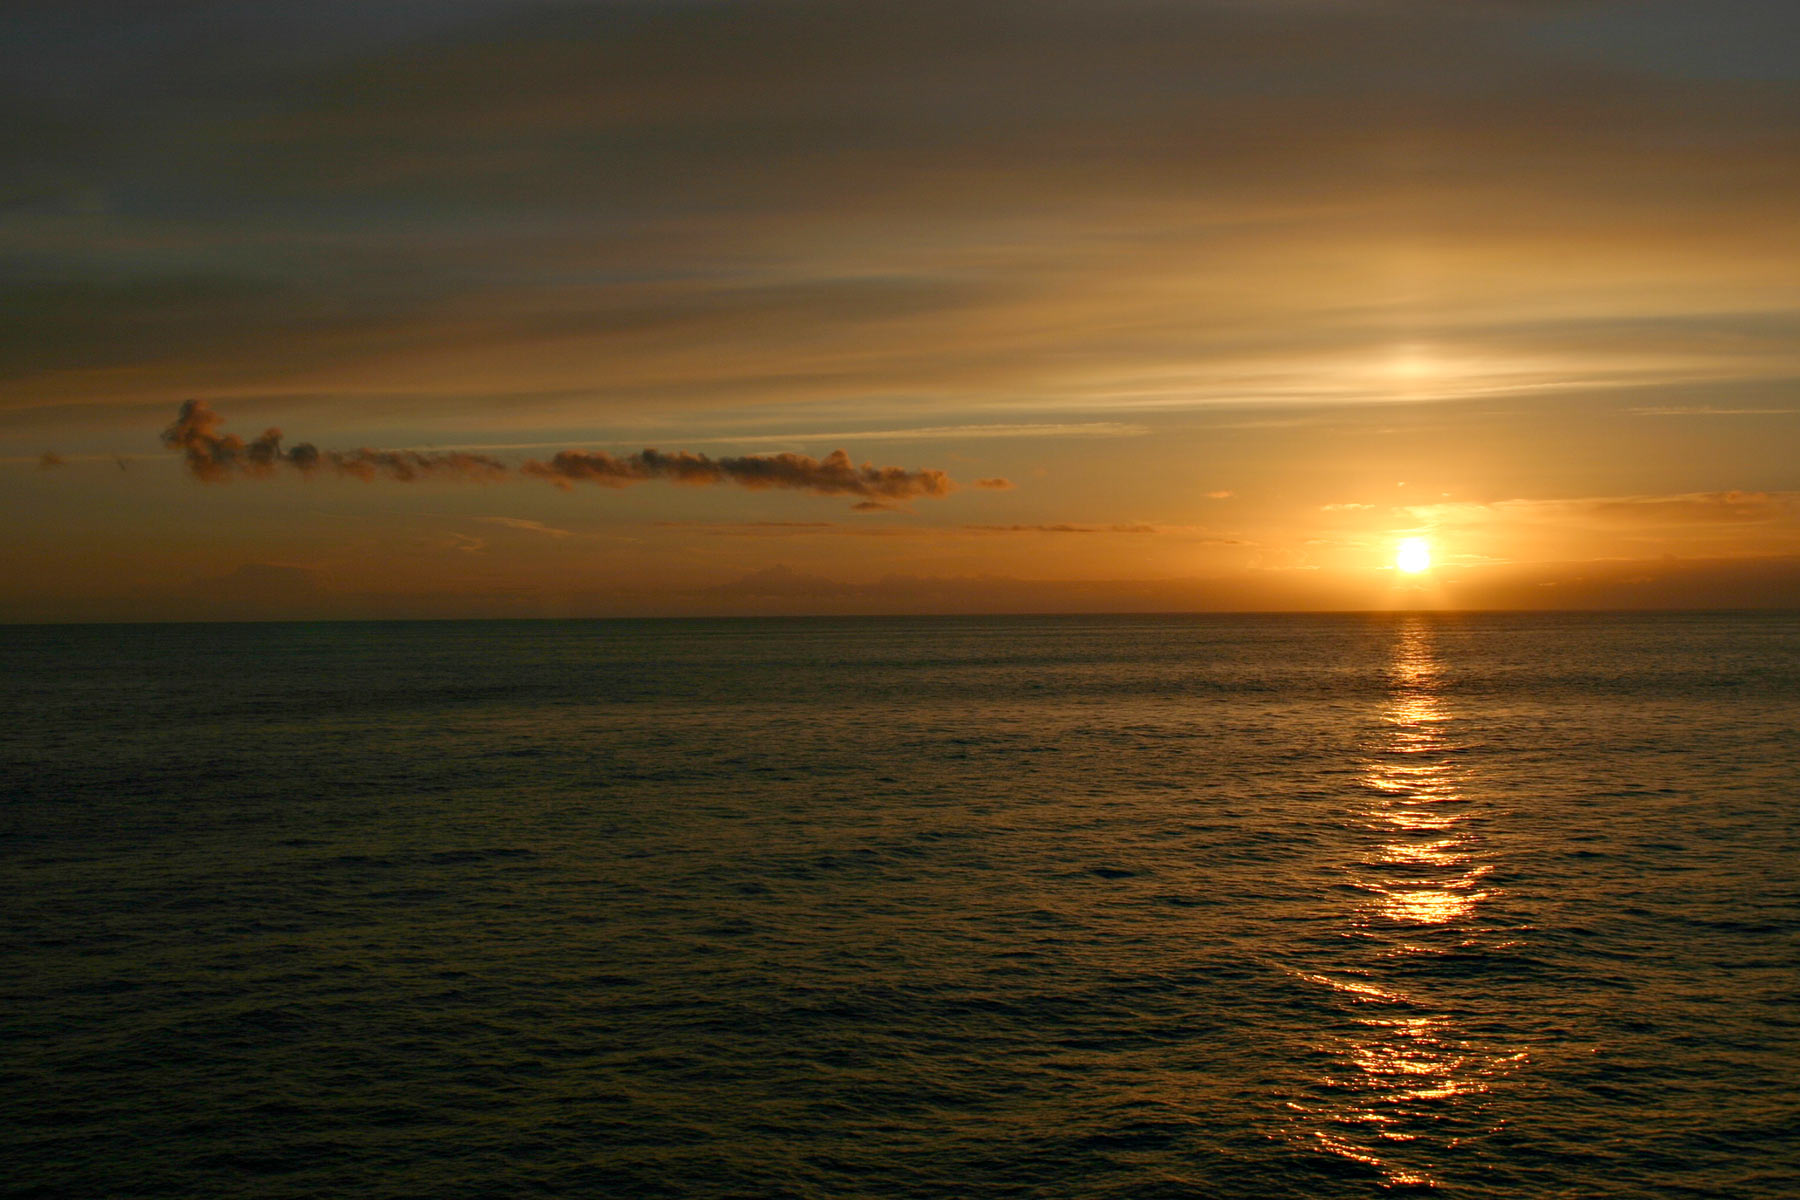 Sunset on the ocean photo